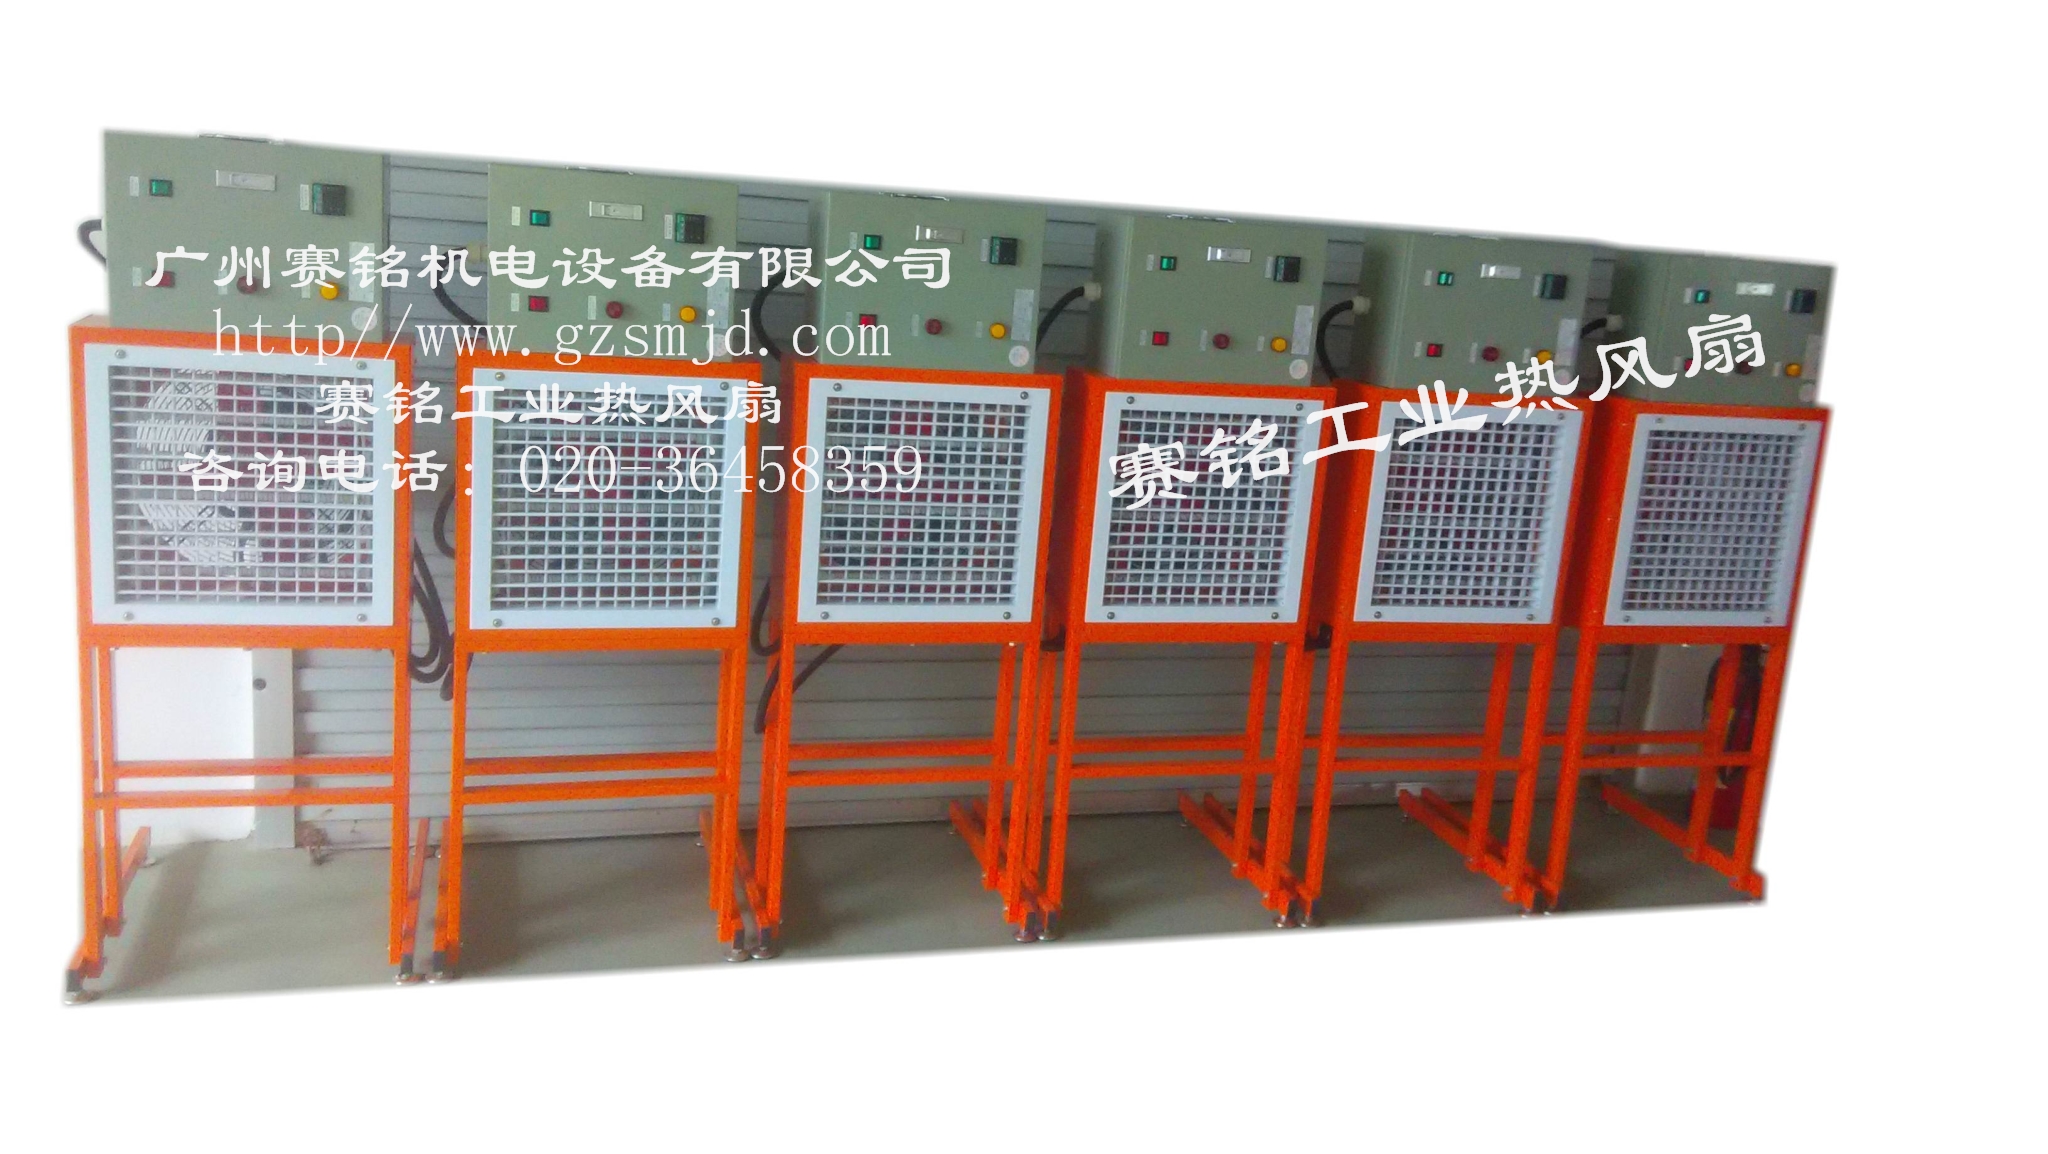 广州赛铭工业热风扇专用于厂房、仓库等空间升温。图片